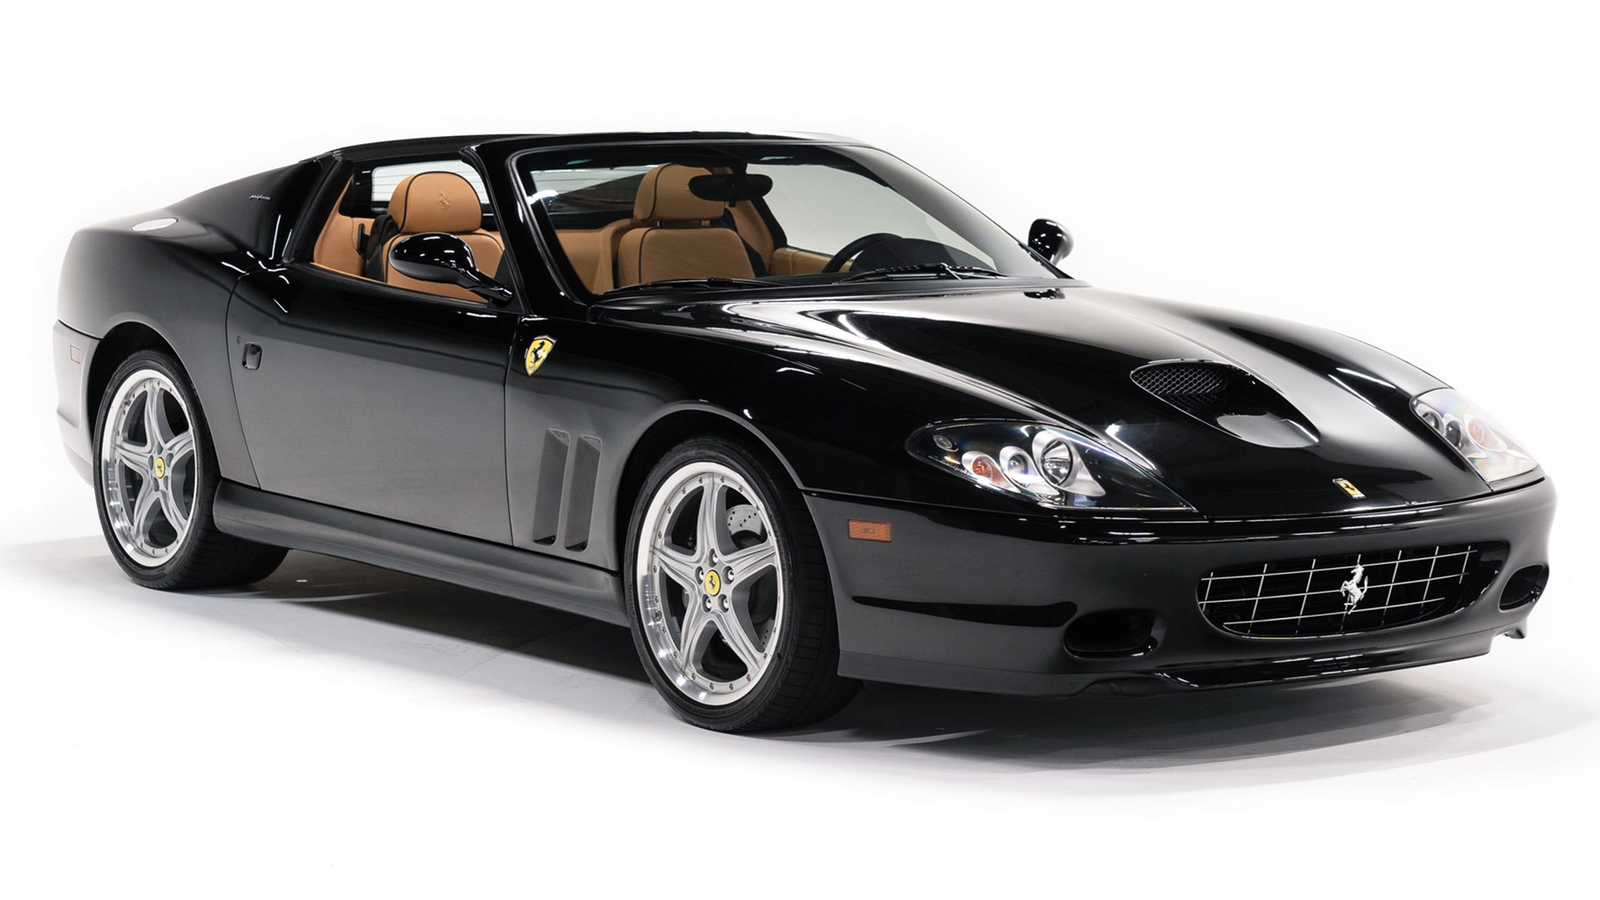 29 Ferraris set for US$90m Pebble Beach sale